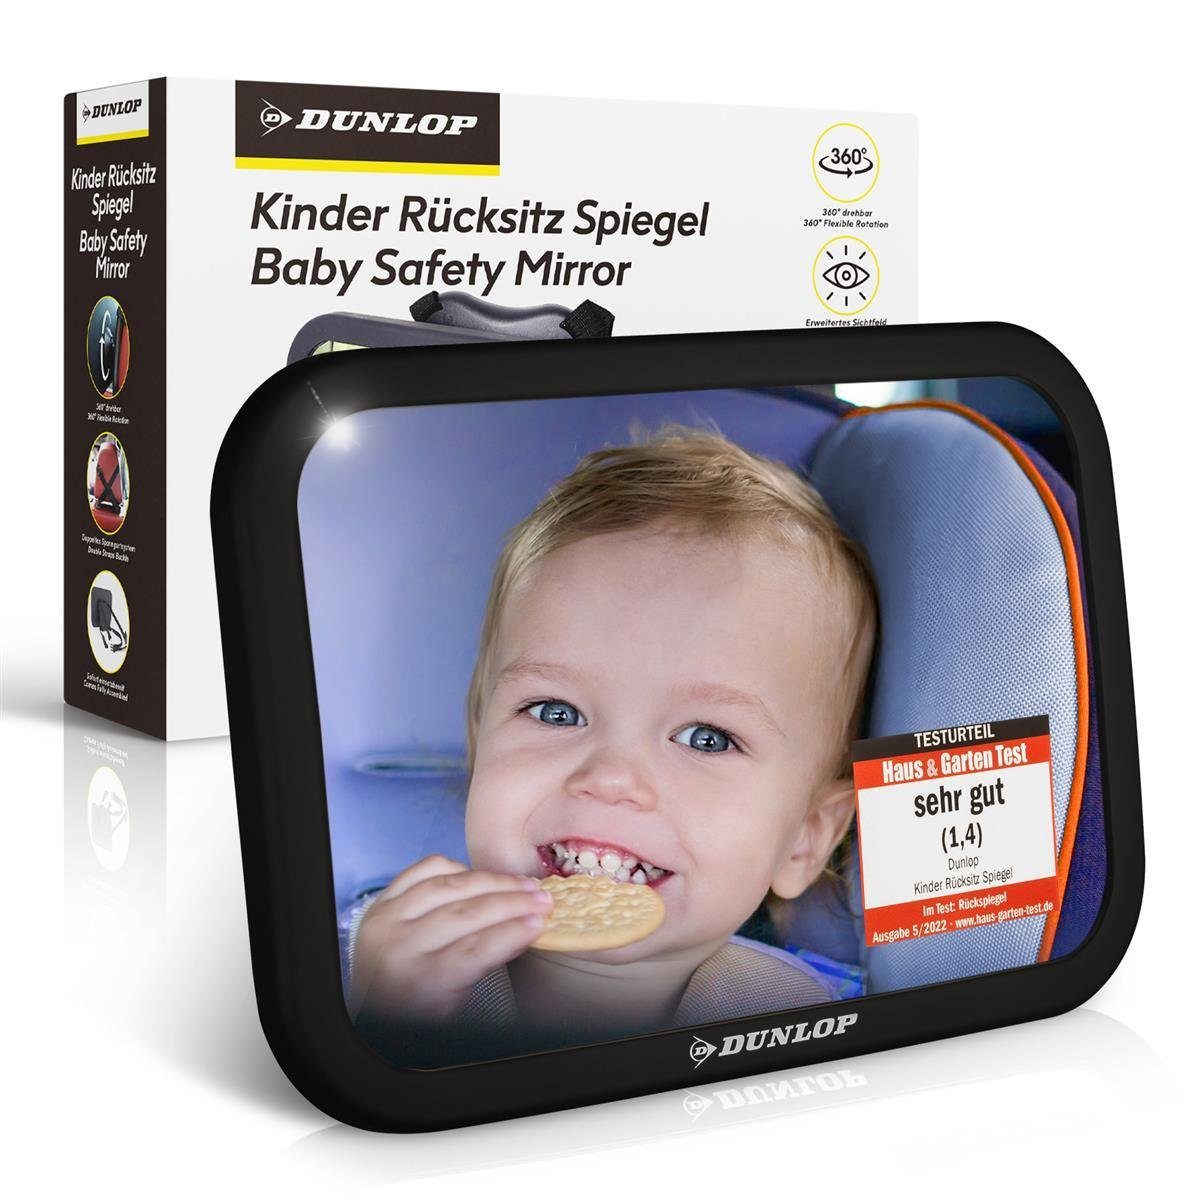 Baby Autospiegel für Kopfstütze, Rückspiegel bruchsicher & extra groß, Rücksitzspiegel für Babys